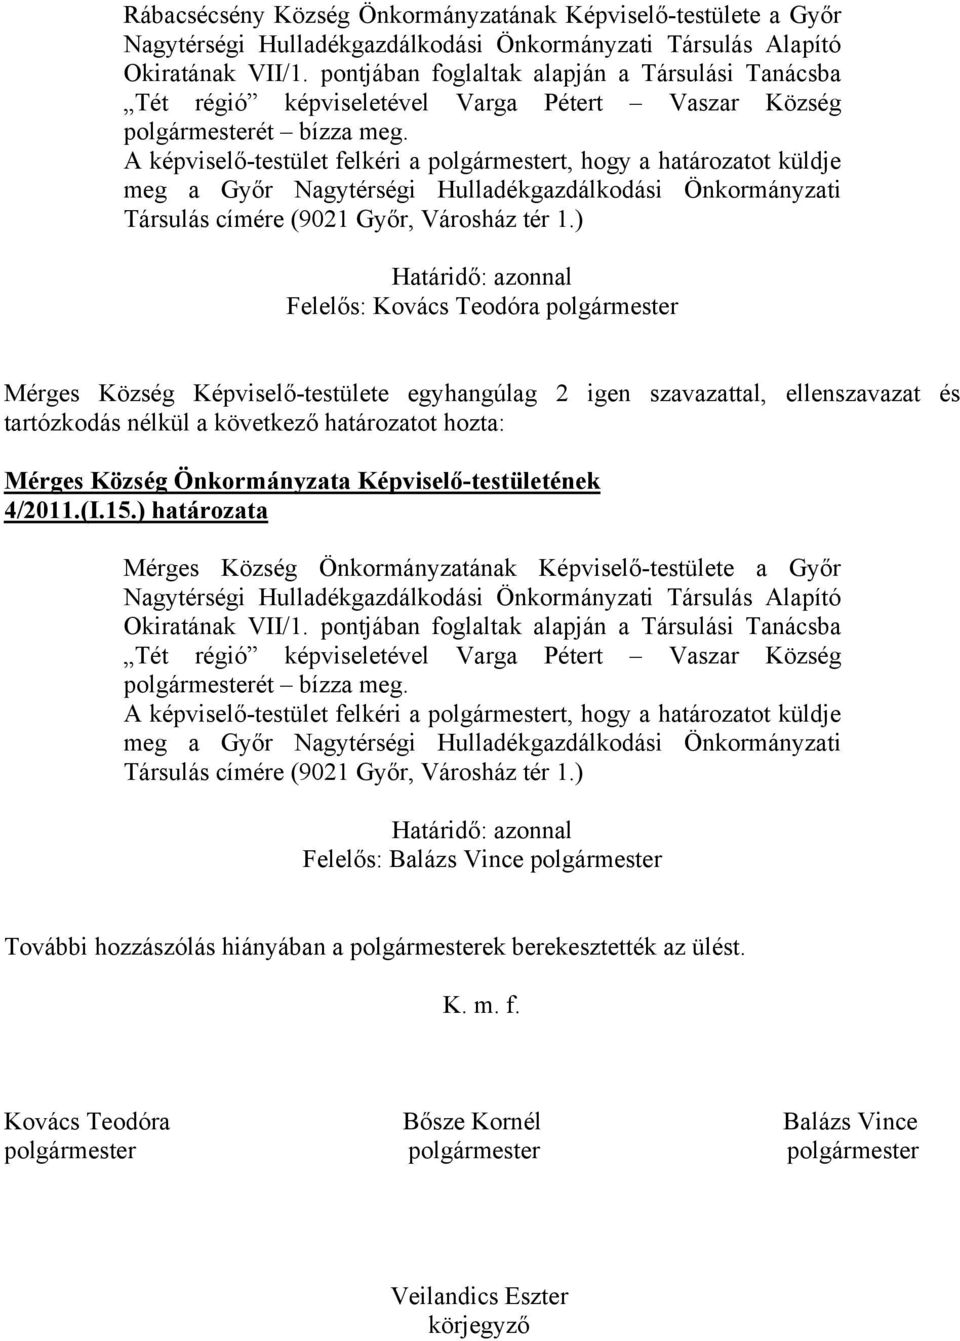 A képviselő-testület felkéri a polgármestert, hogy a határozatot küldje meg a Győr Nagytérségi Hulladékgazdálkodási Önkormányzati Társulás címére (9021 Győr, Városház tér 1.